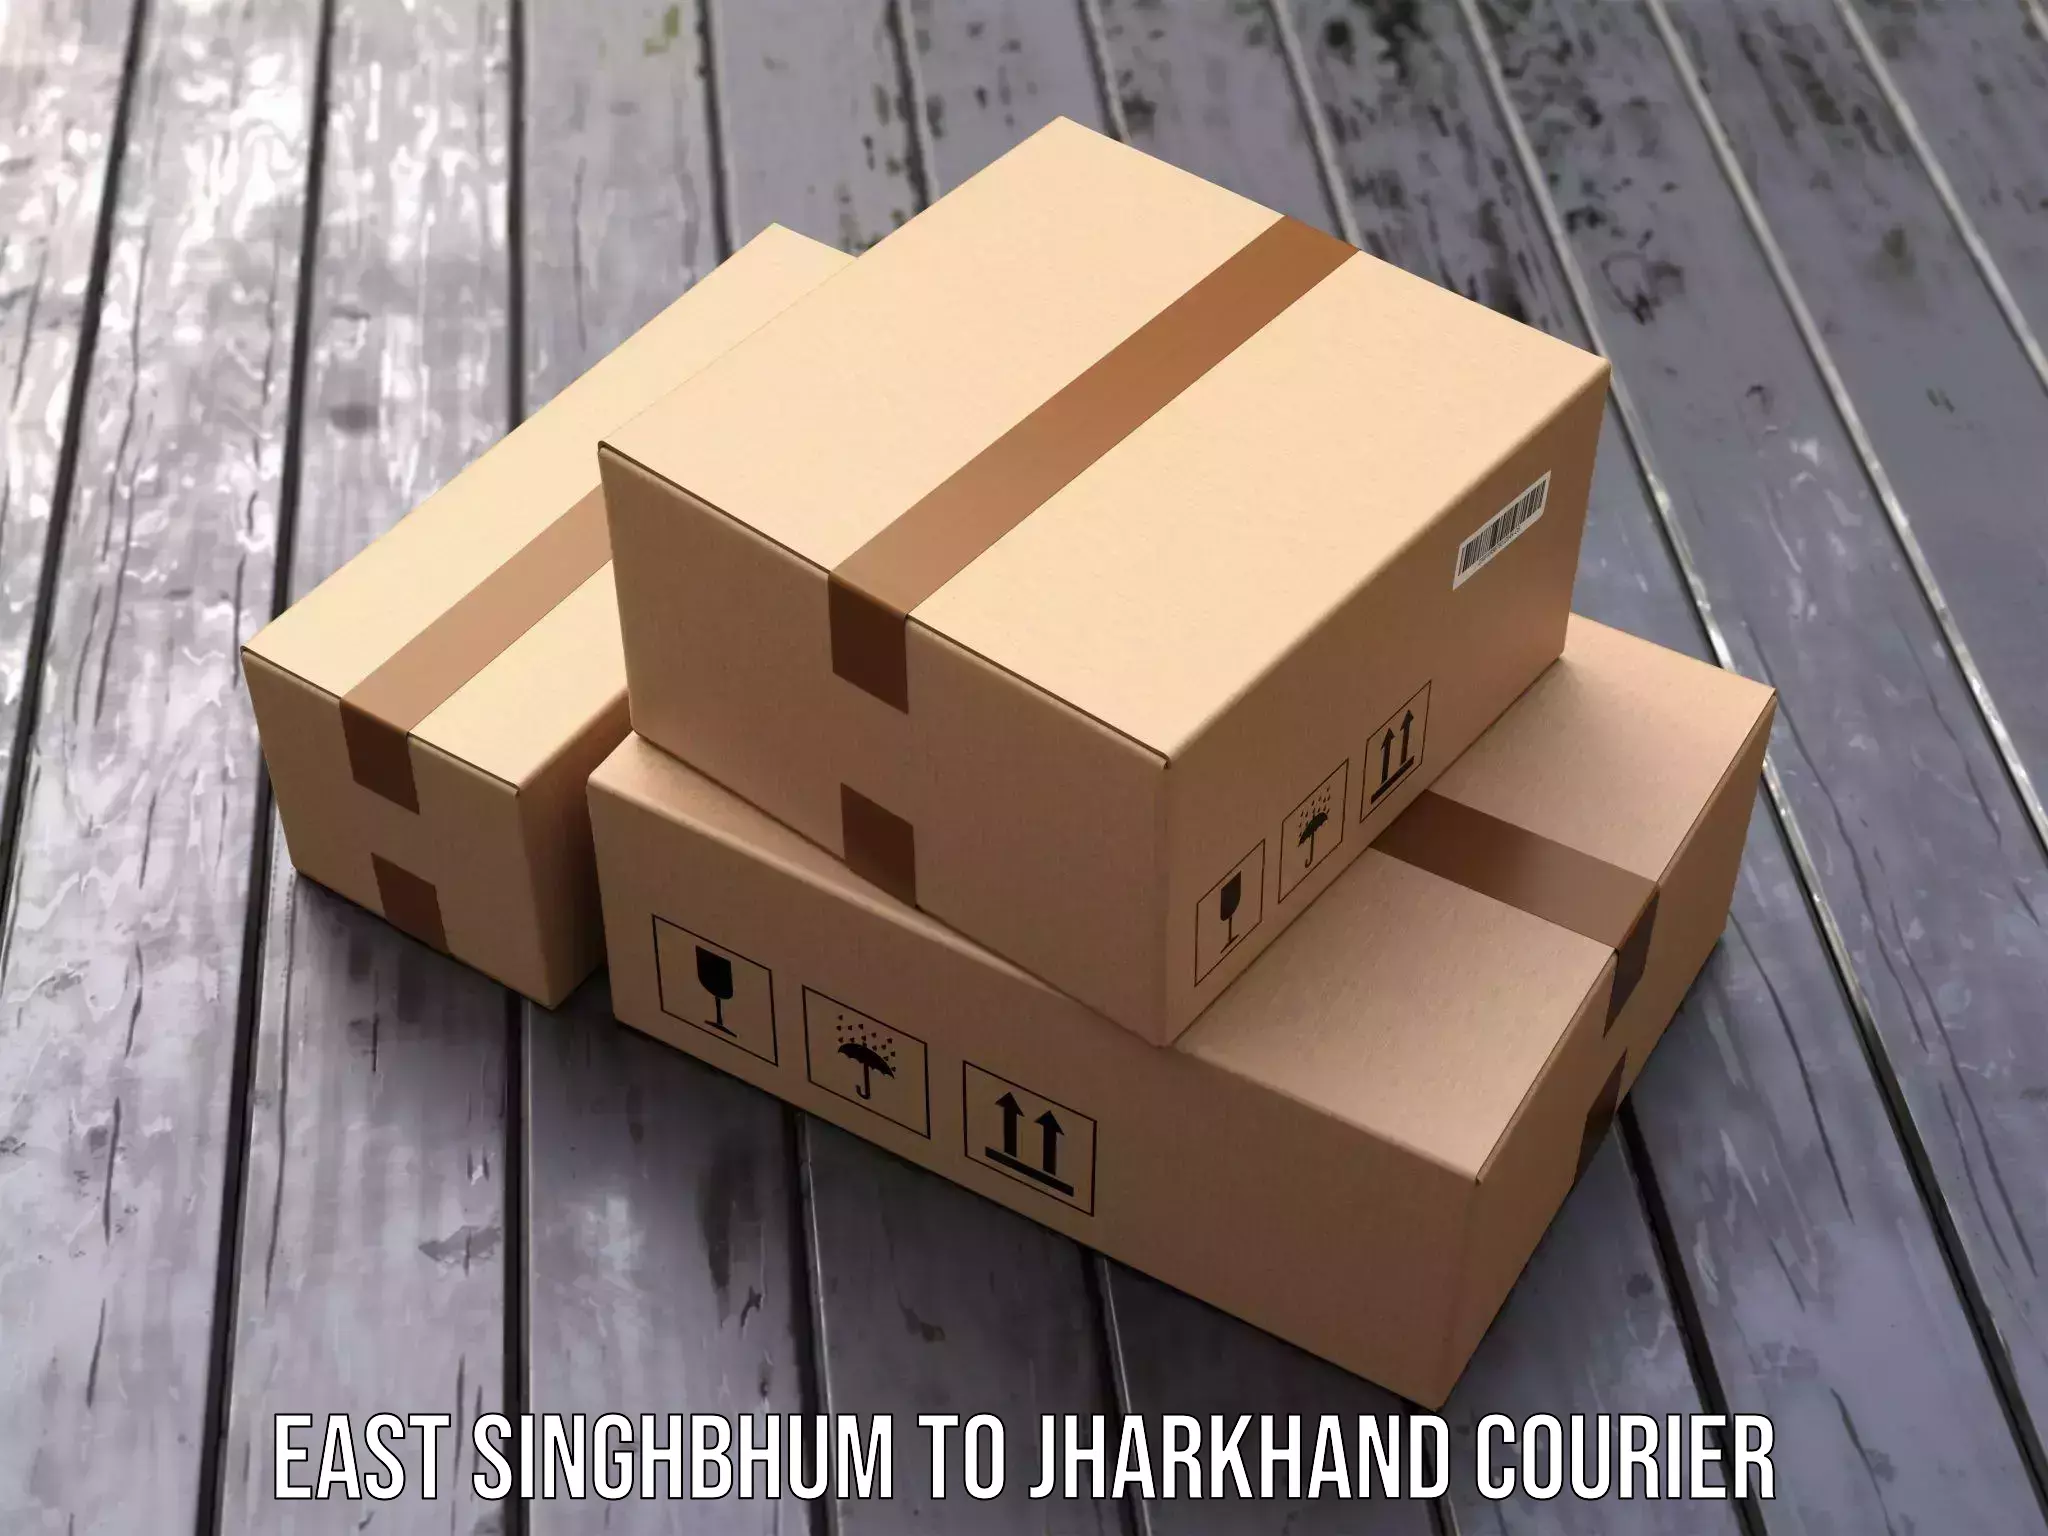 Courier service comparison East Singhbhum to Ghatshila